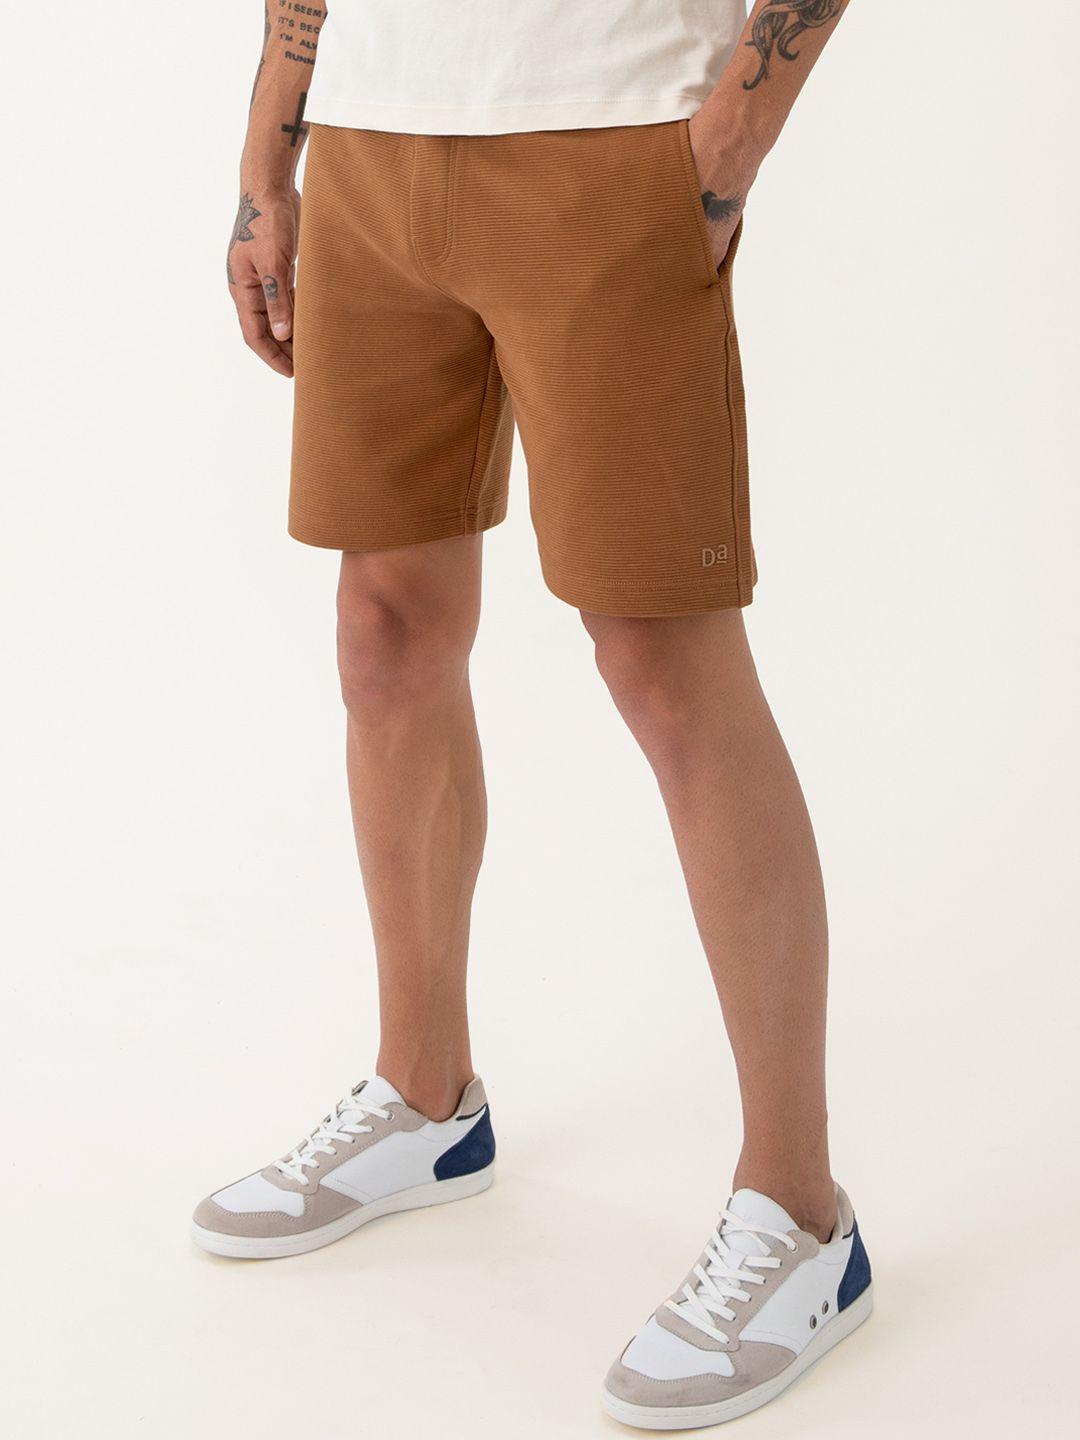 damensch men 500 day brown pure cotton regular shorts